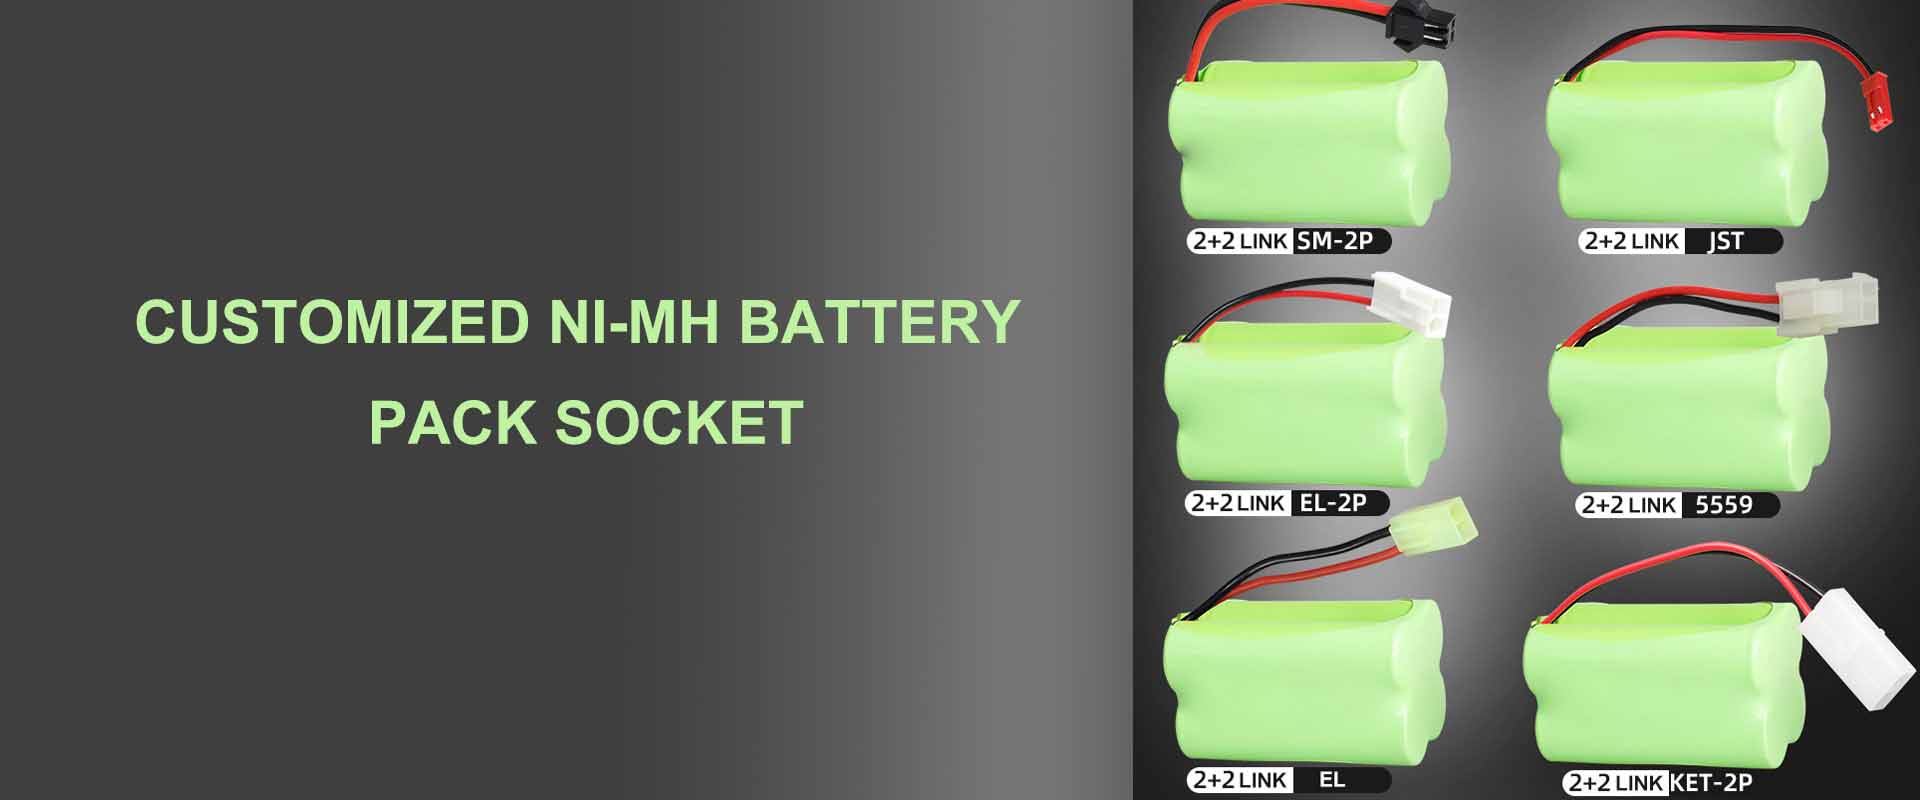 Kaip tvarkyti ir naudoti NiMH baterijų paketą |WEIJIANG